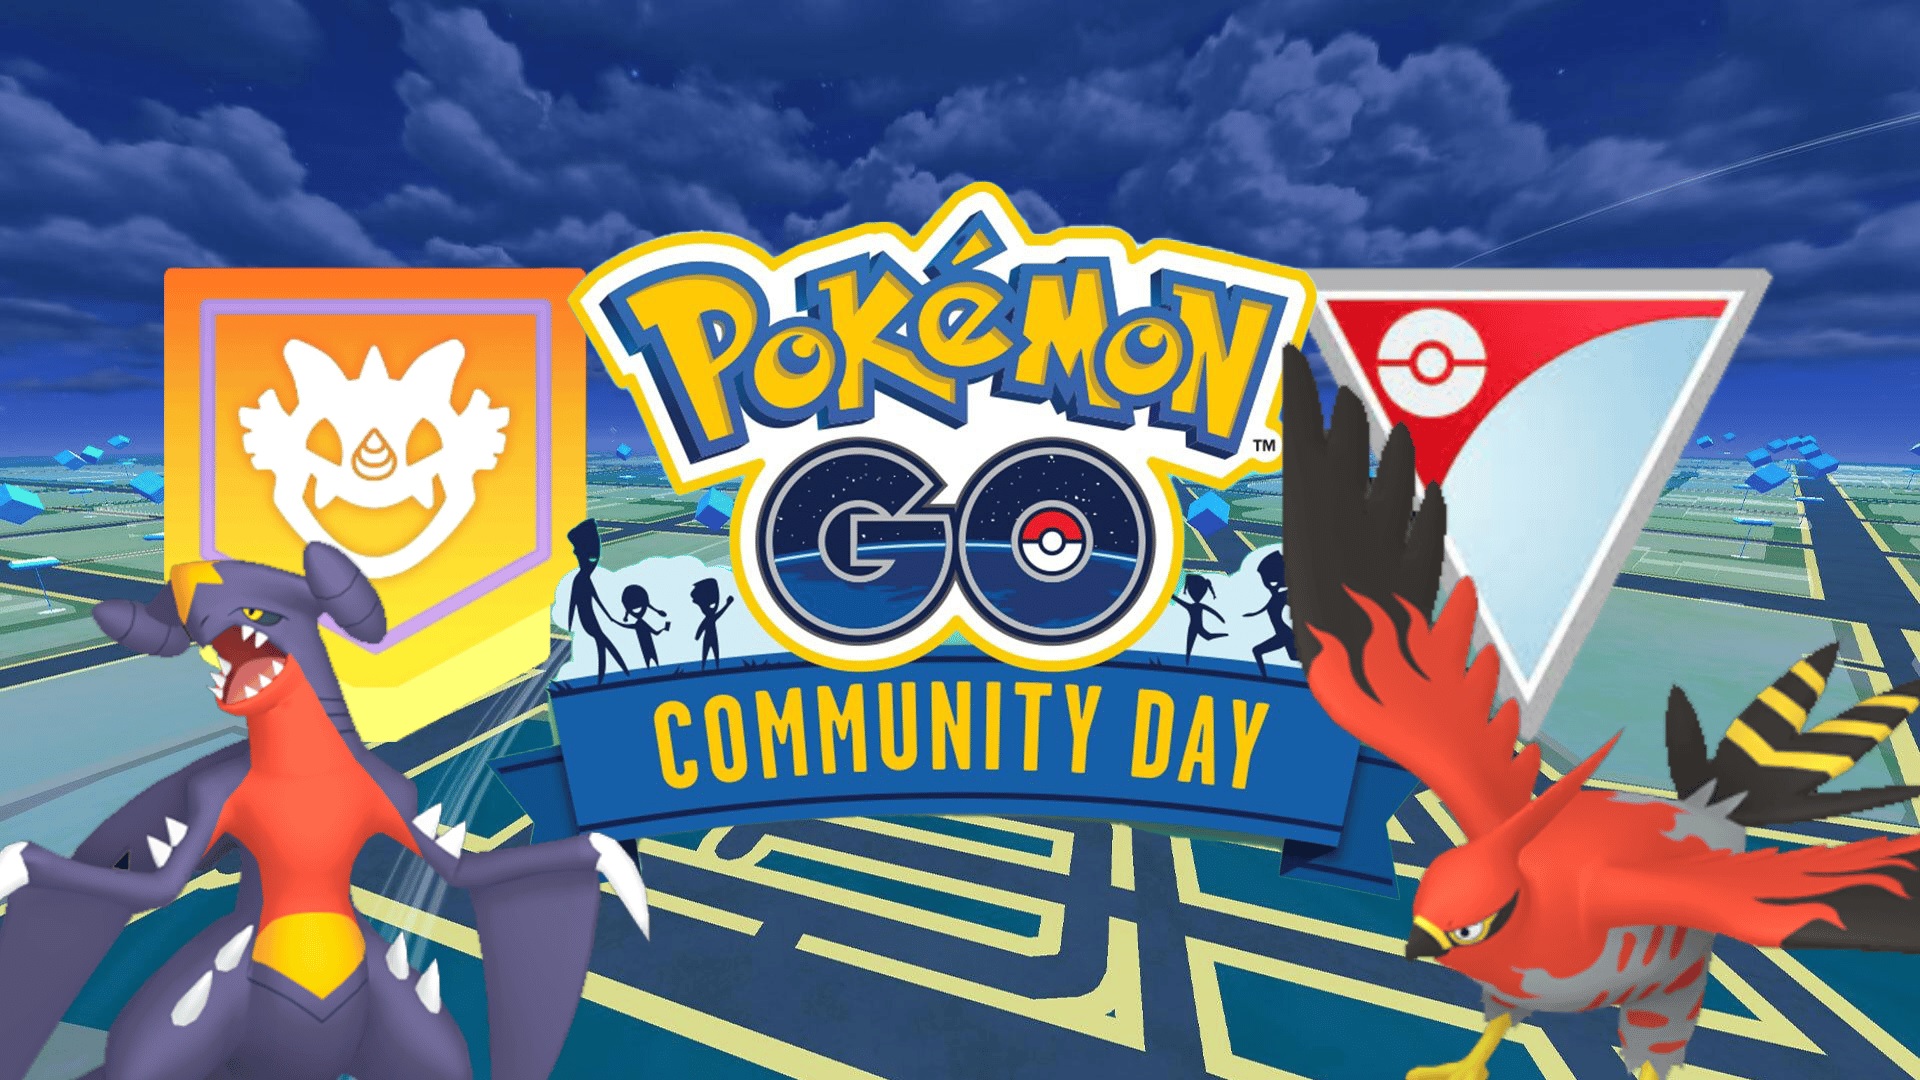 Pokémon Go Community Day Everything You Need to Know TechBuzzes